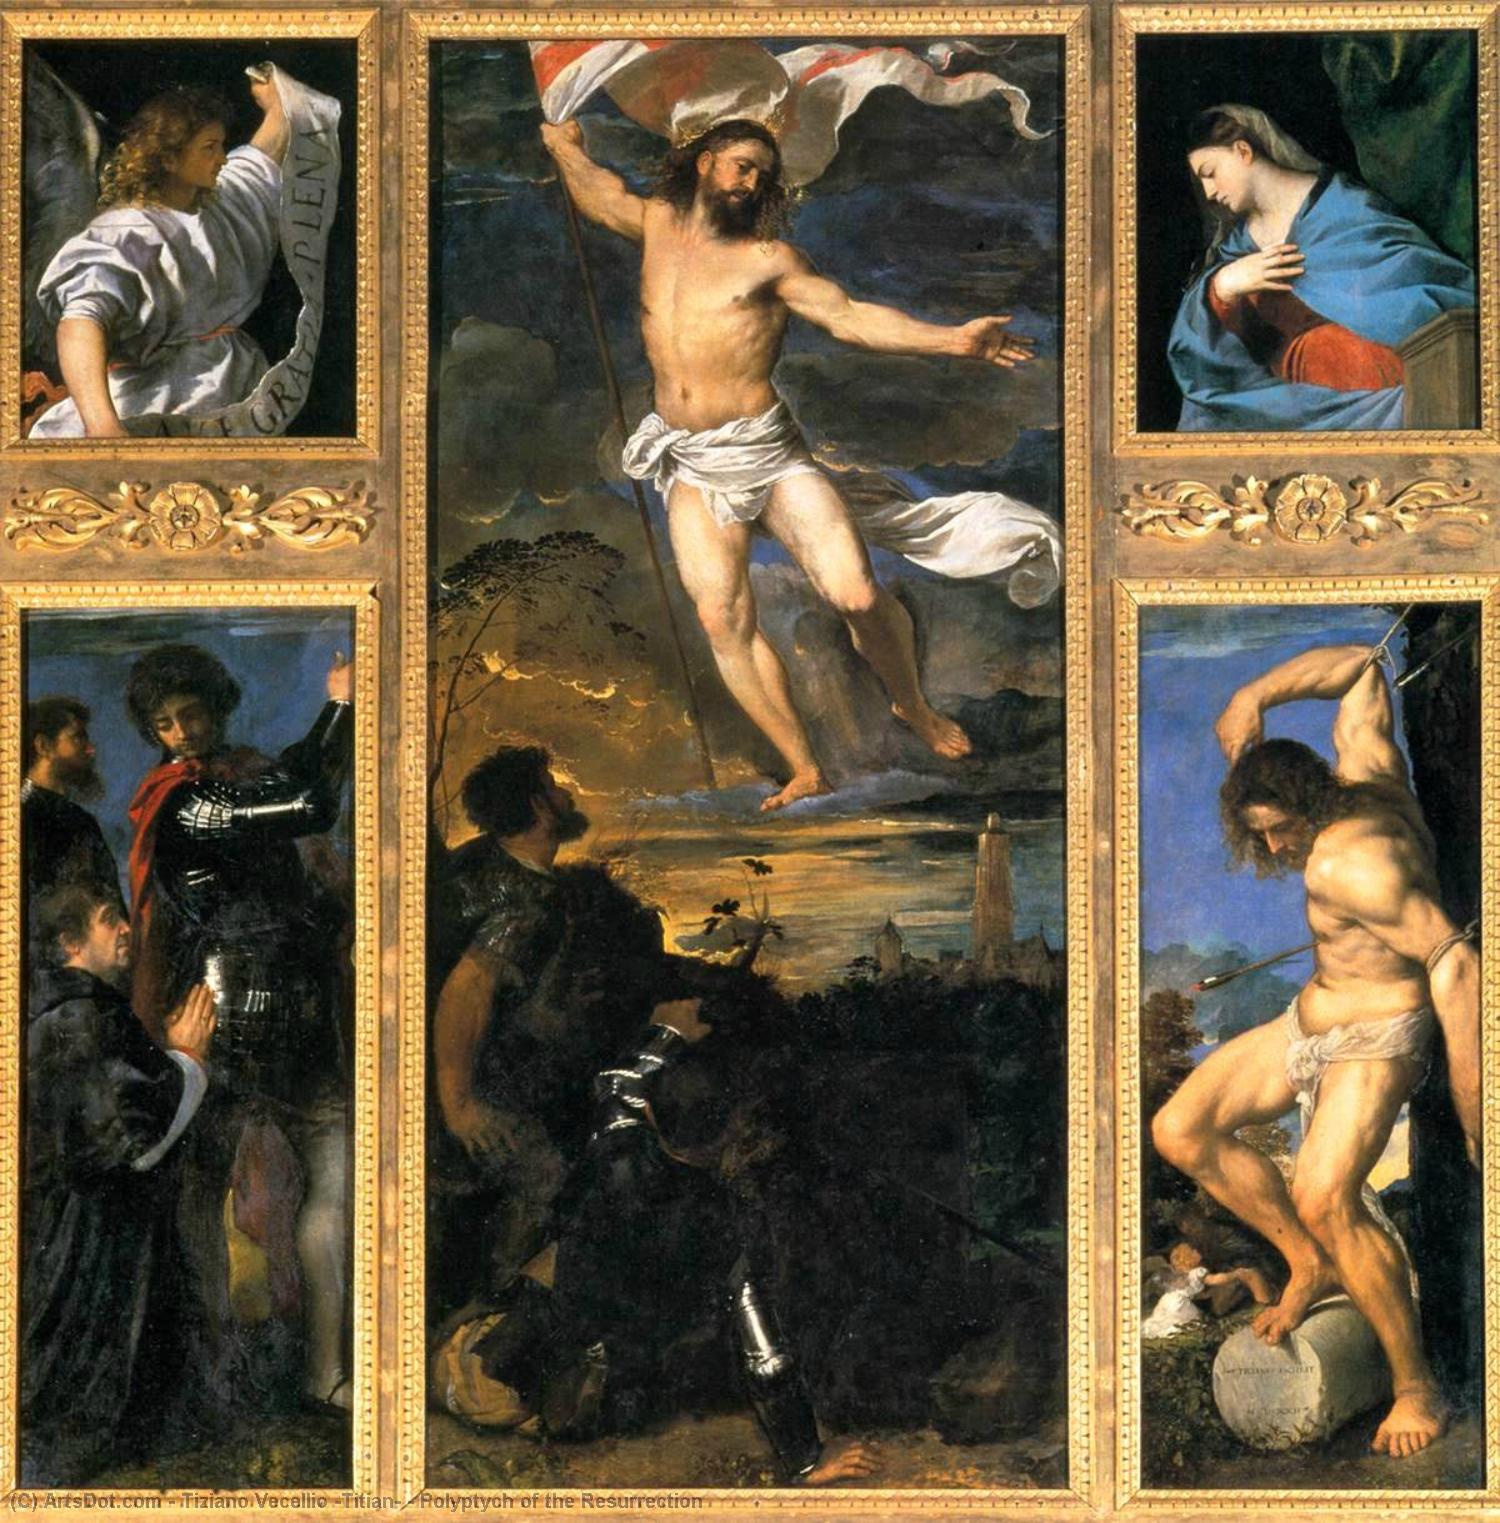 WikiOO.org - Enciklopedija likovnih umjetnosti - Slikarstvo, umjetnička djela Tiziano Vecellio (Titian) - Polyptych of the Resurrection